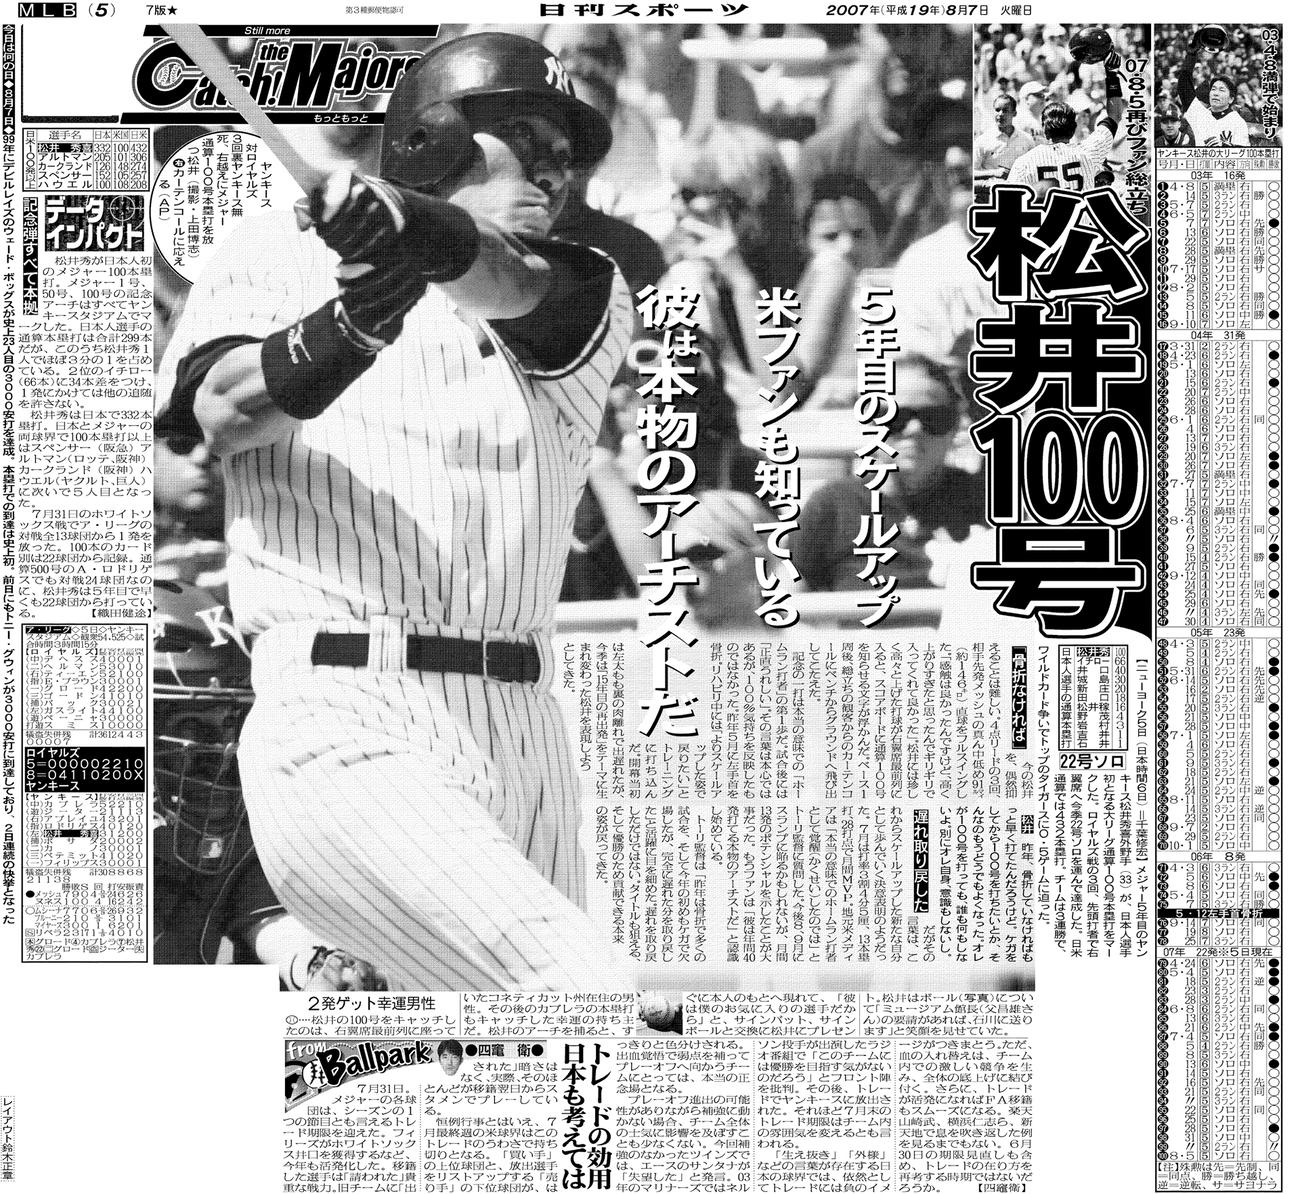 ヤンキース松井秀喜が日本人選手初のメジャー通算100号、総立ち観客 